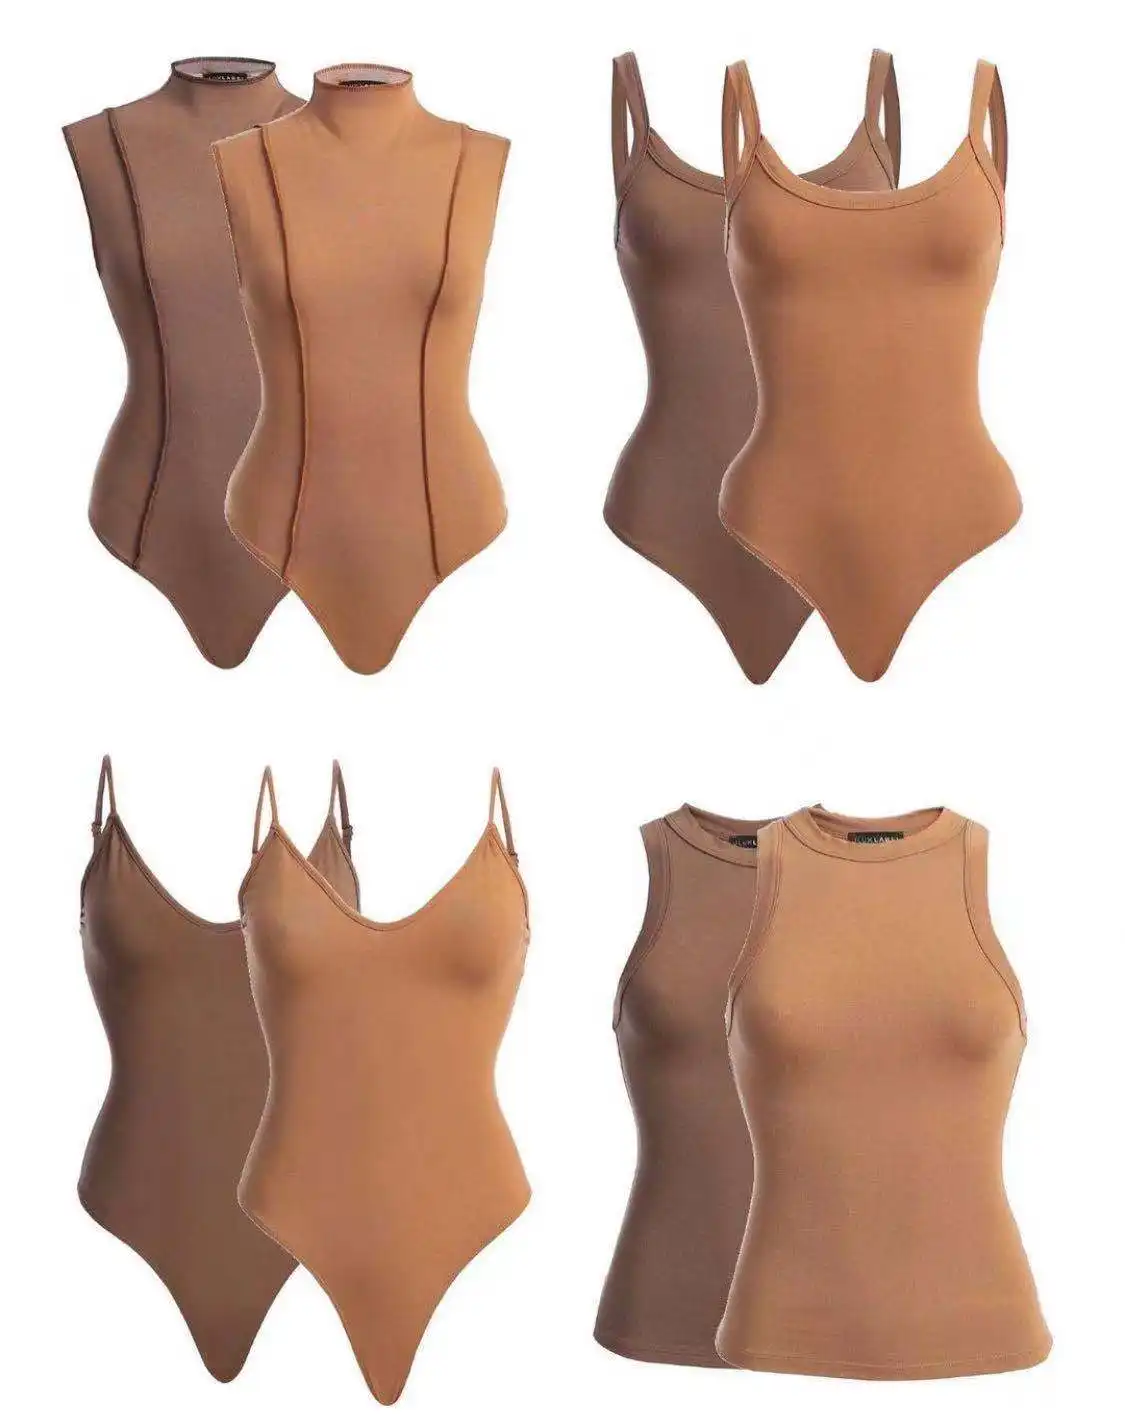 بدلة جسم نسائية, بدلة جسم نسائية ضيقة من الأعلى مبيعًا مزودة بحمالة صدر على شكل ضلع وحمالات رفيعة